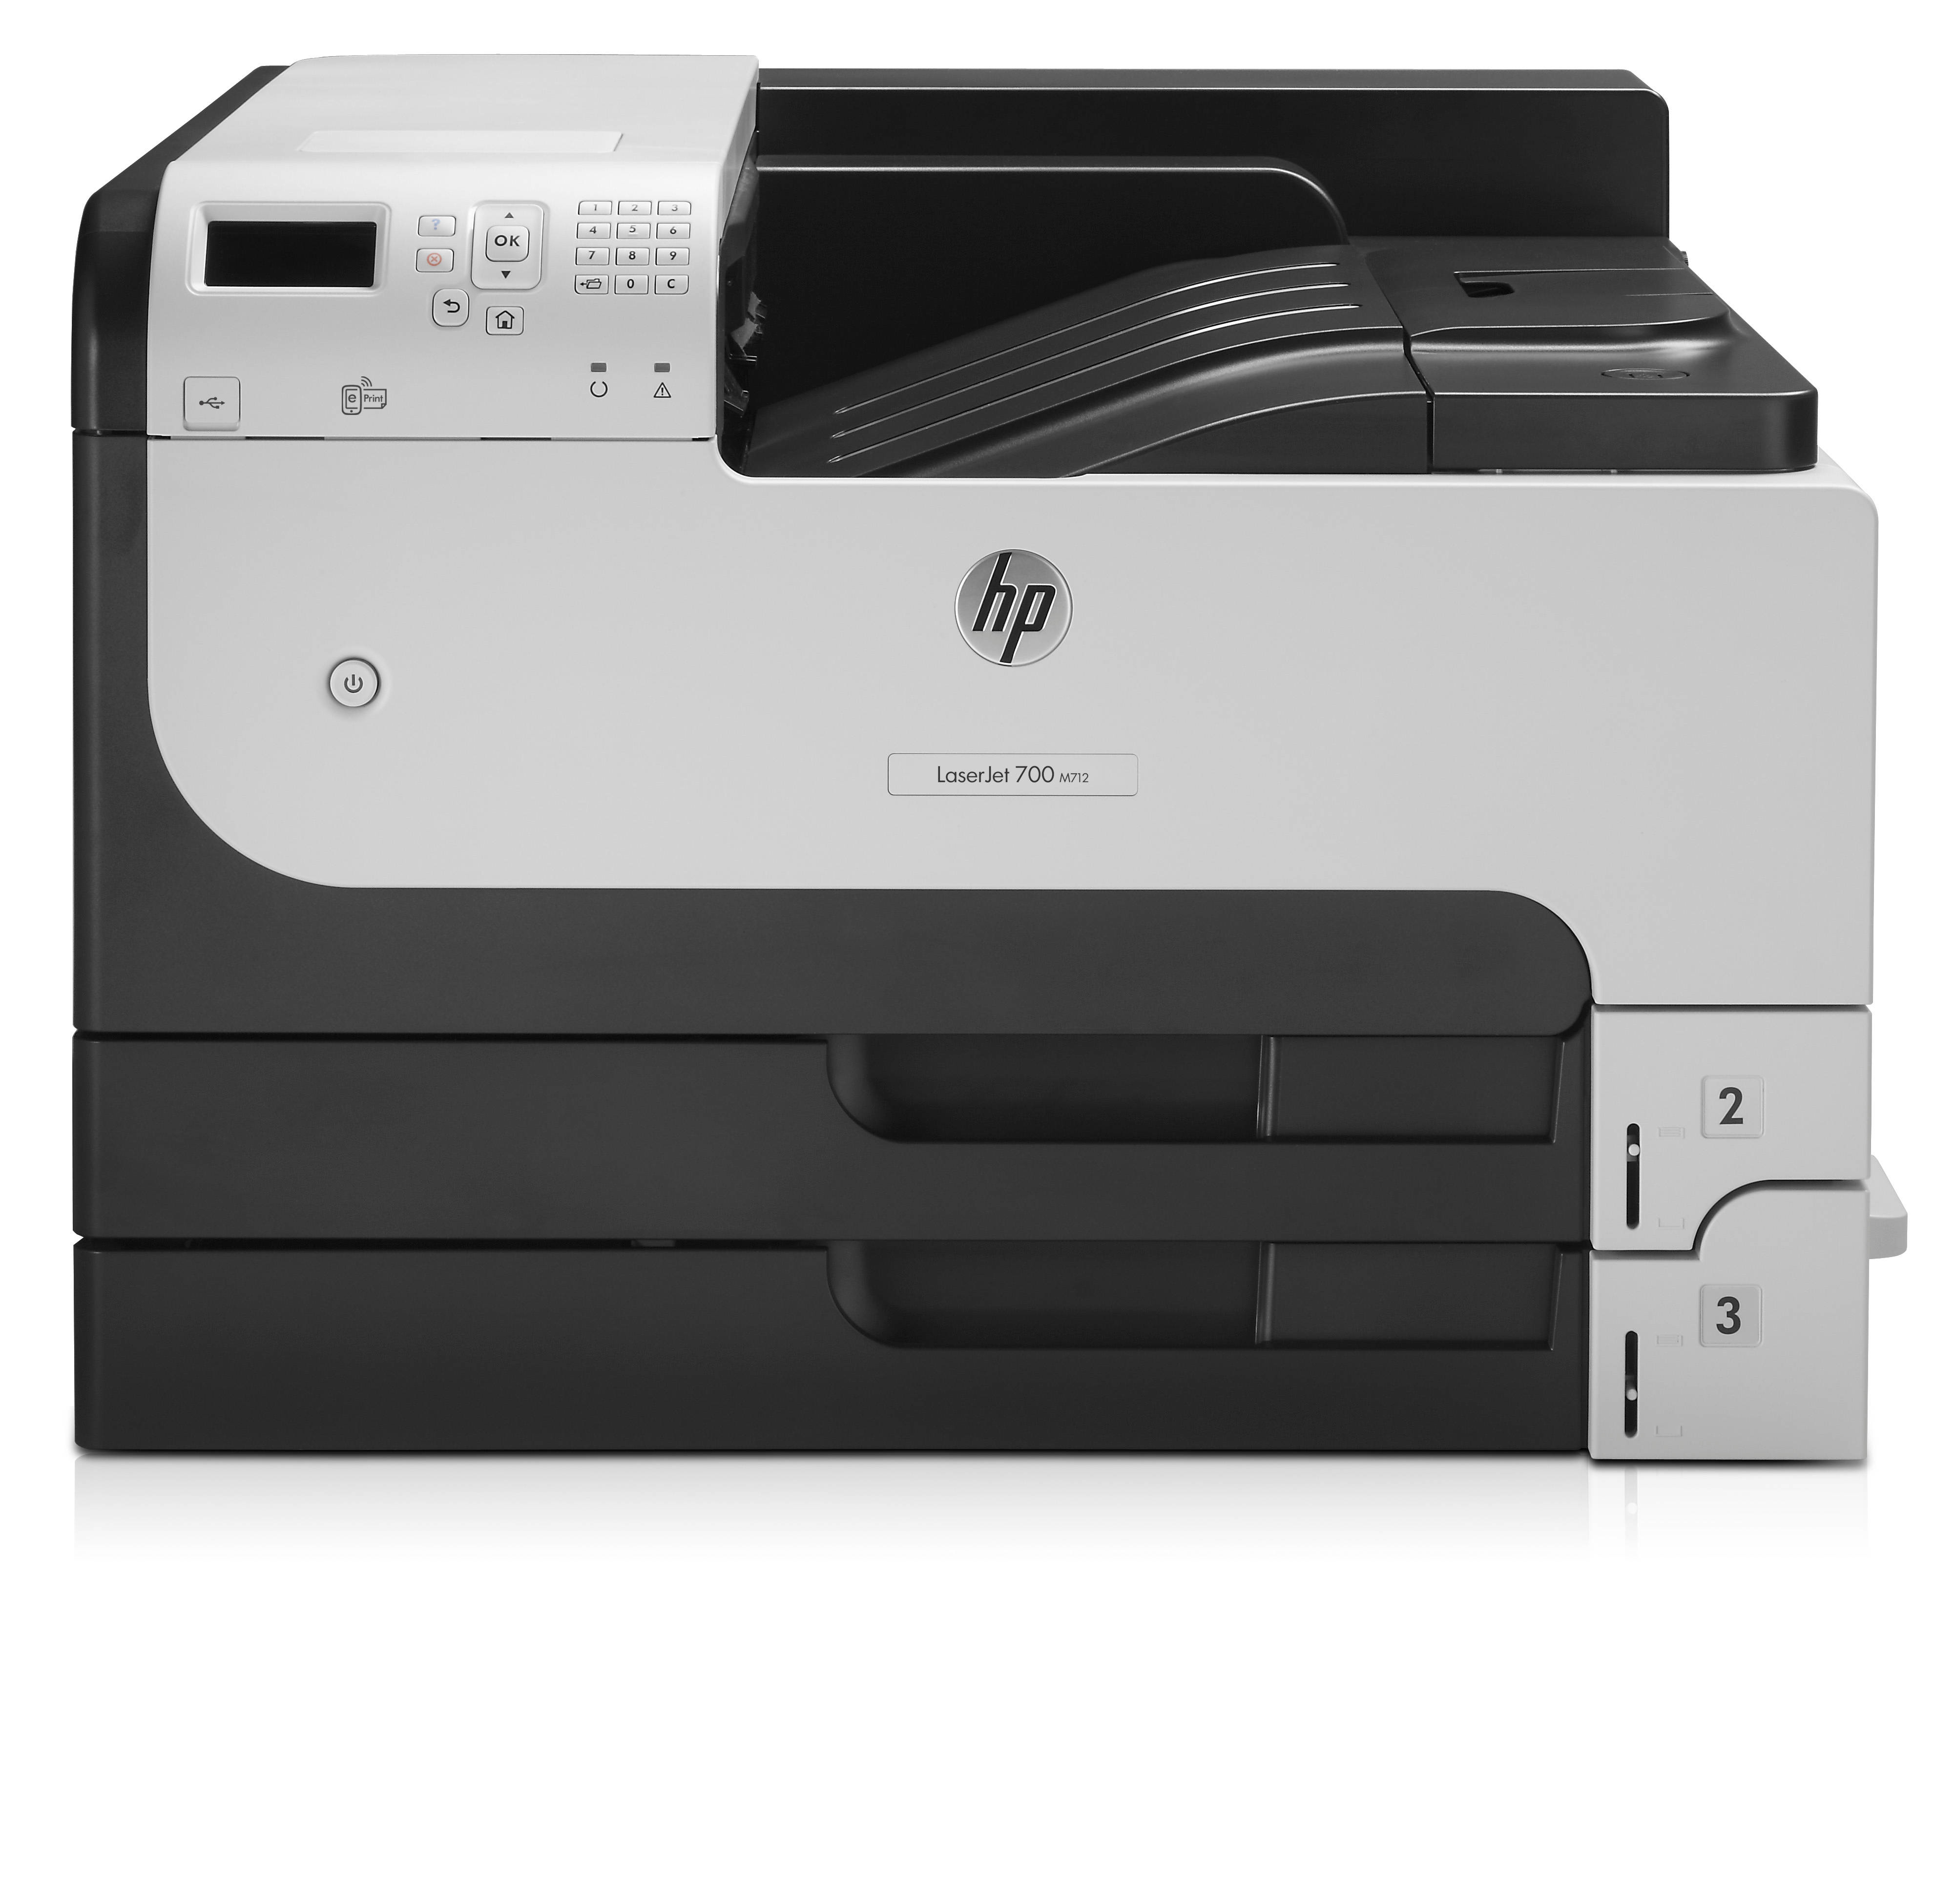 HP LaserJet Enterprise 700 M712dn Mono Laser Printer CF236A - Refurbished